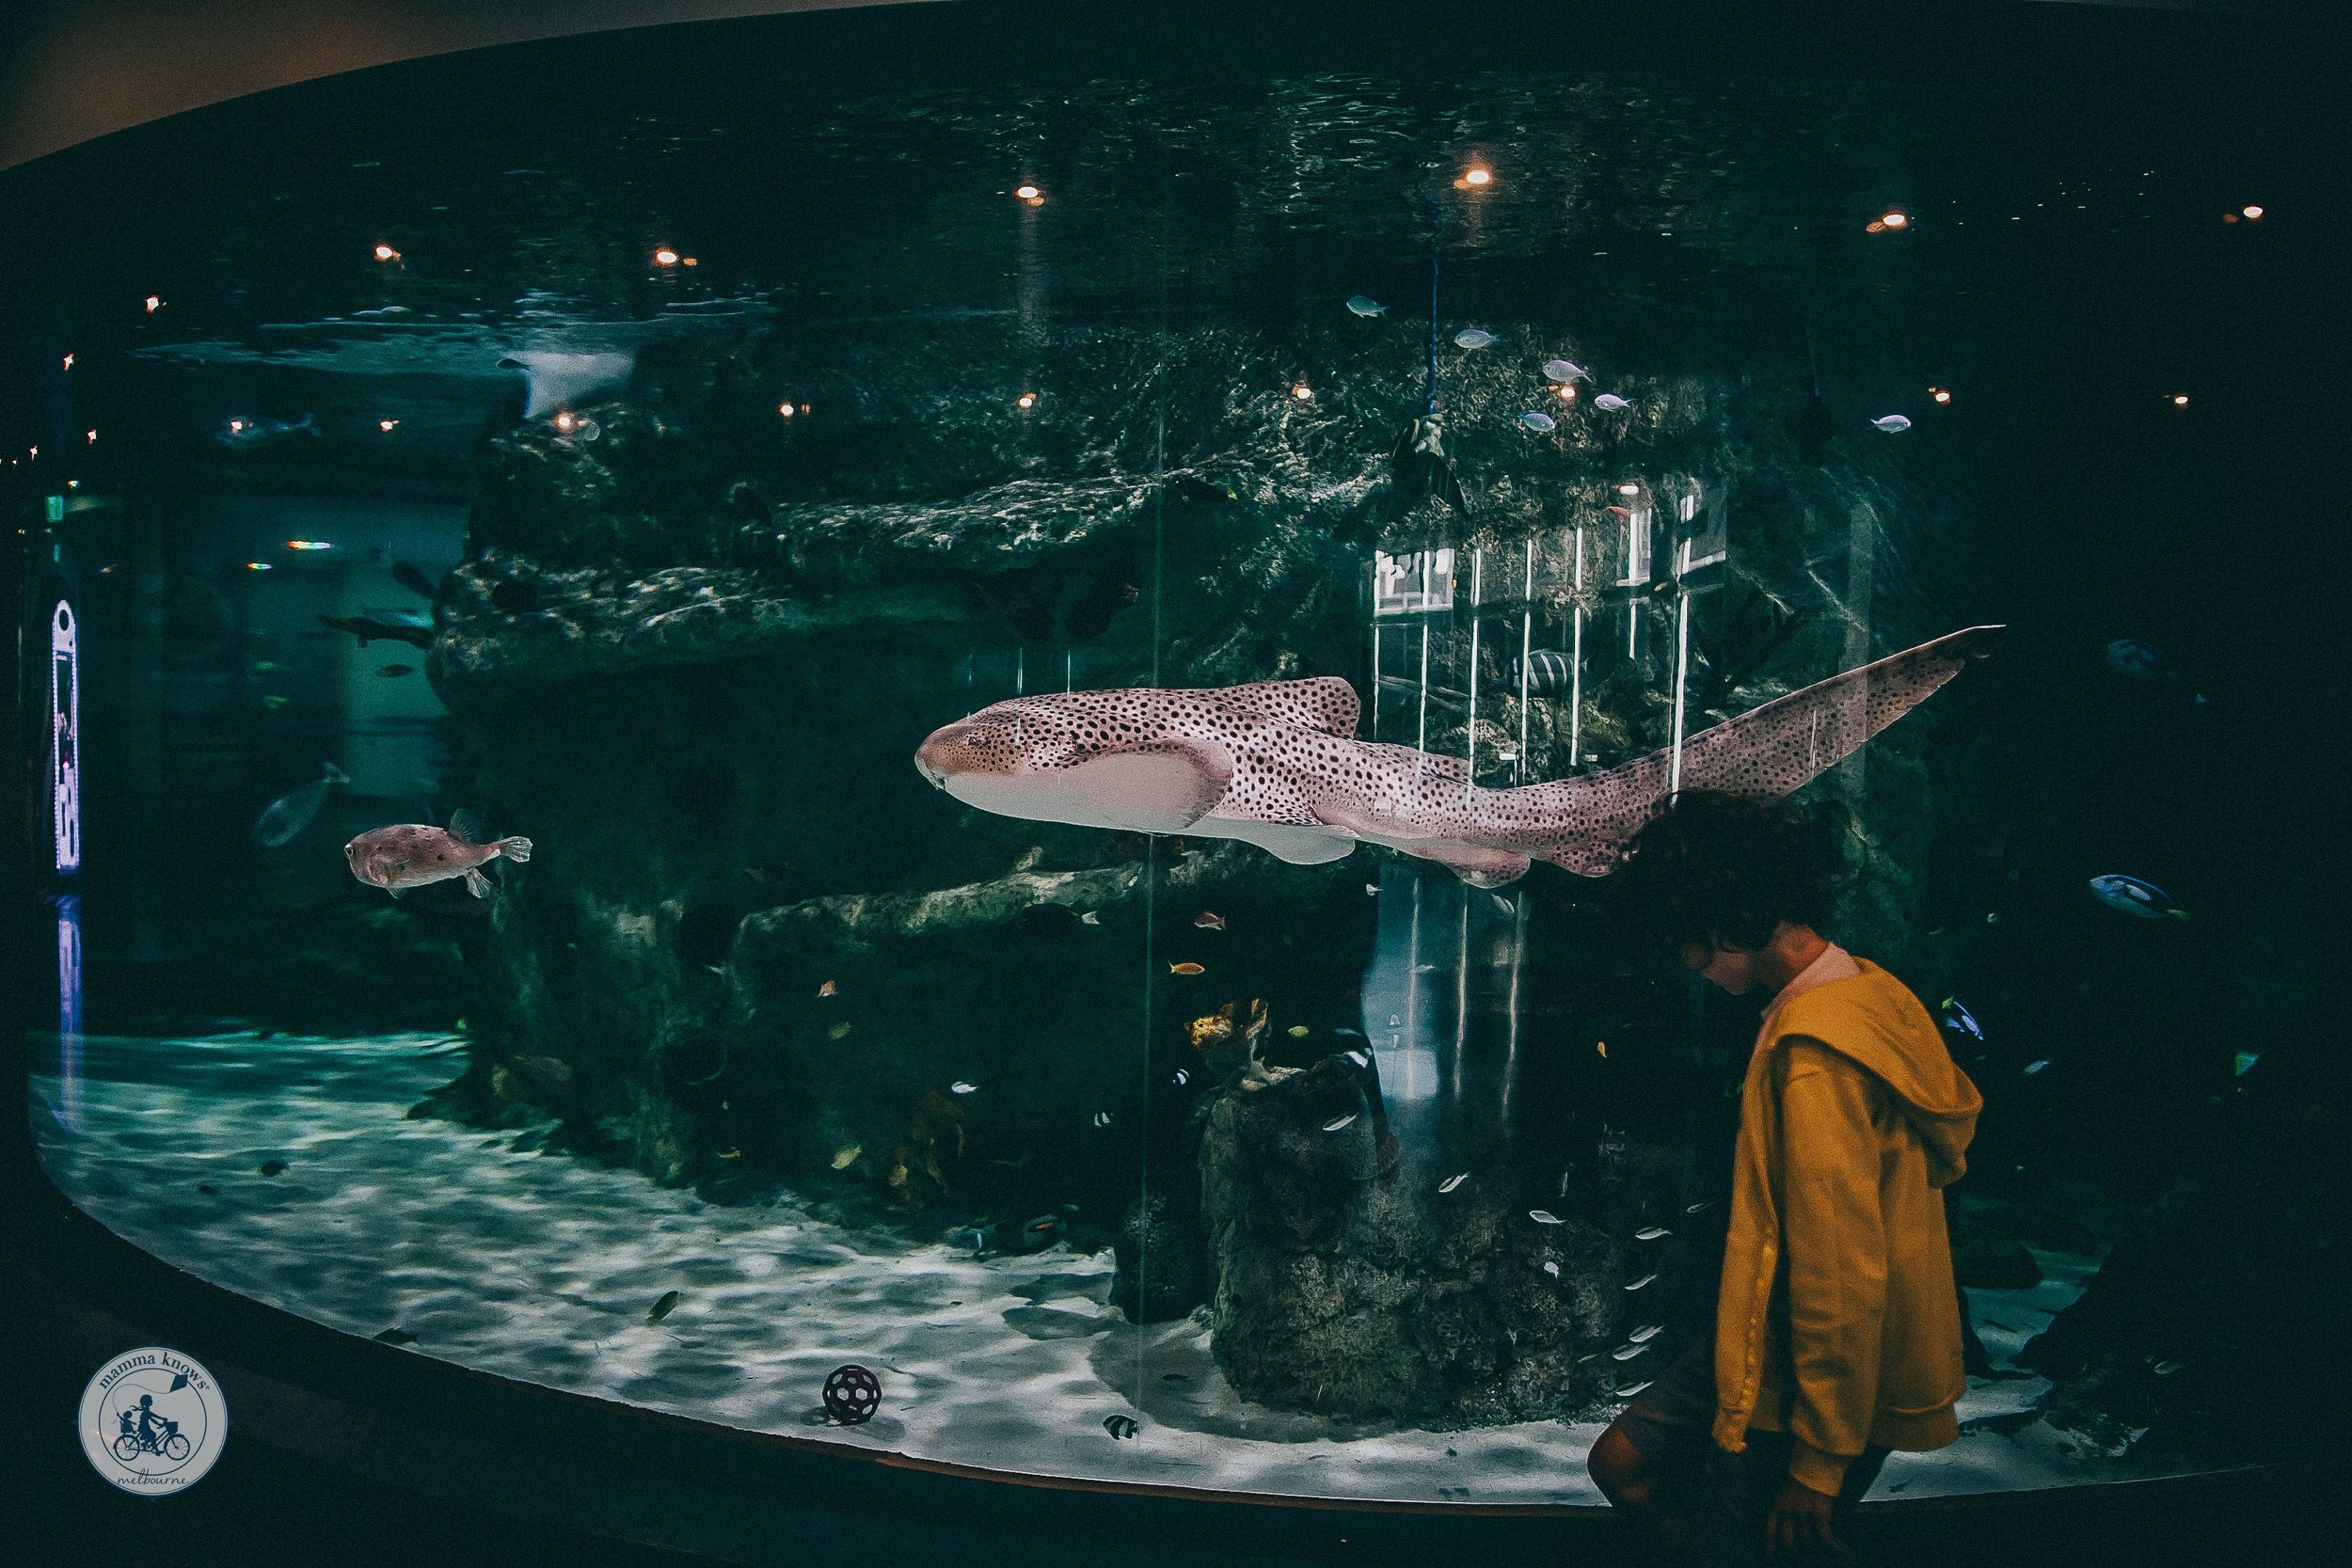 SeaLIFE Aquarium